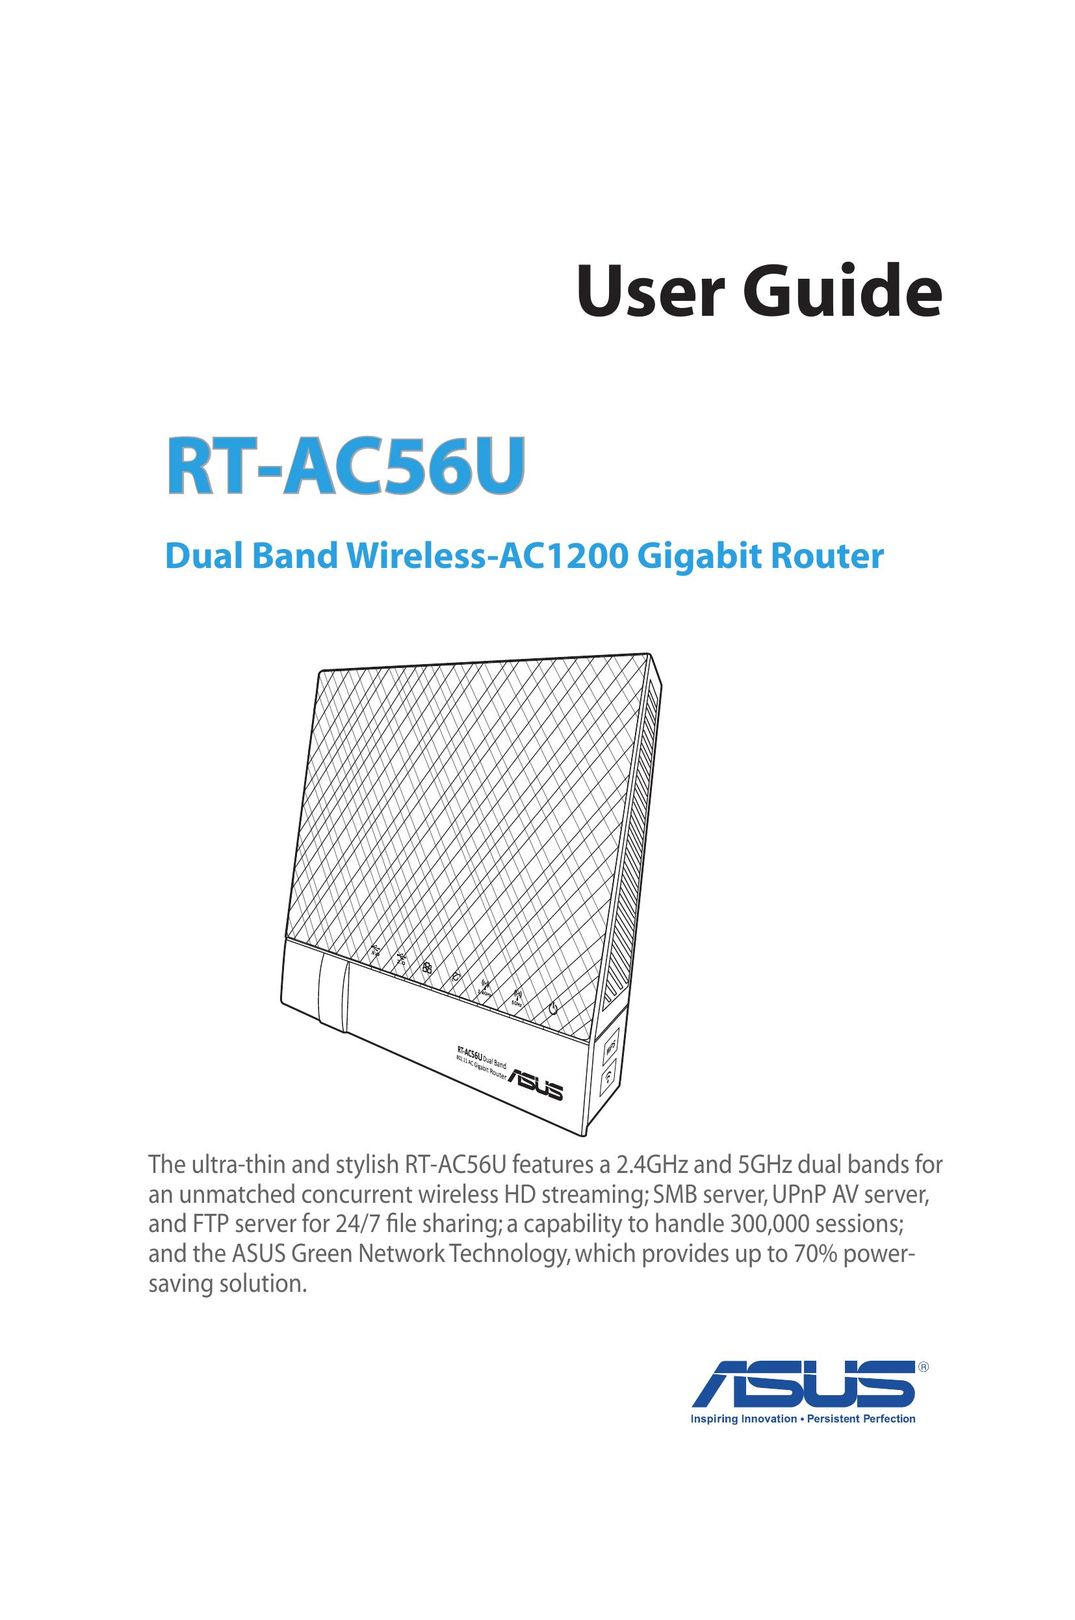 Asus RTAC56U Router User Manual